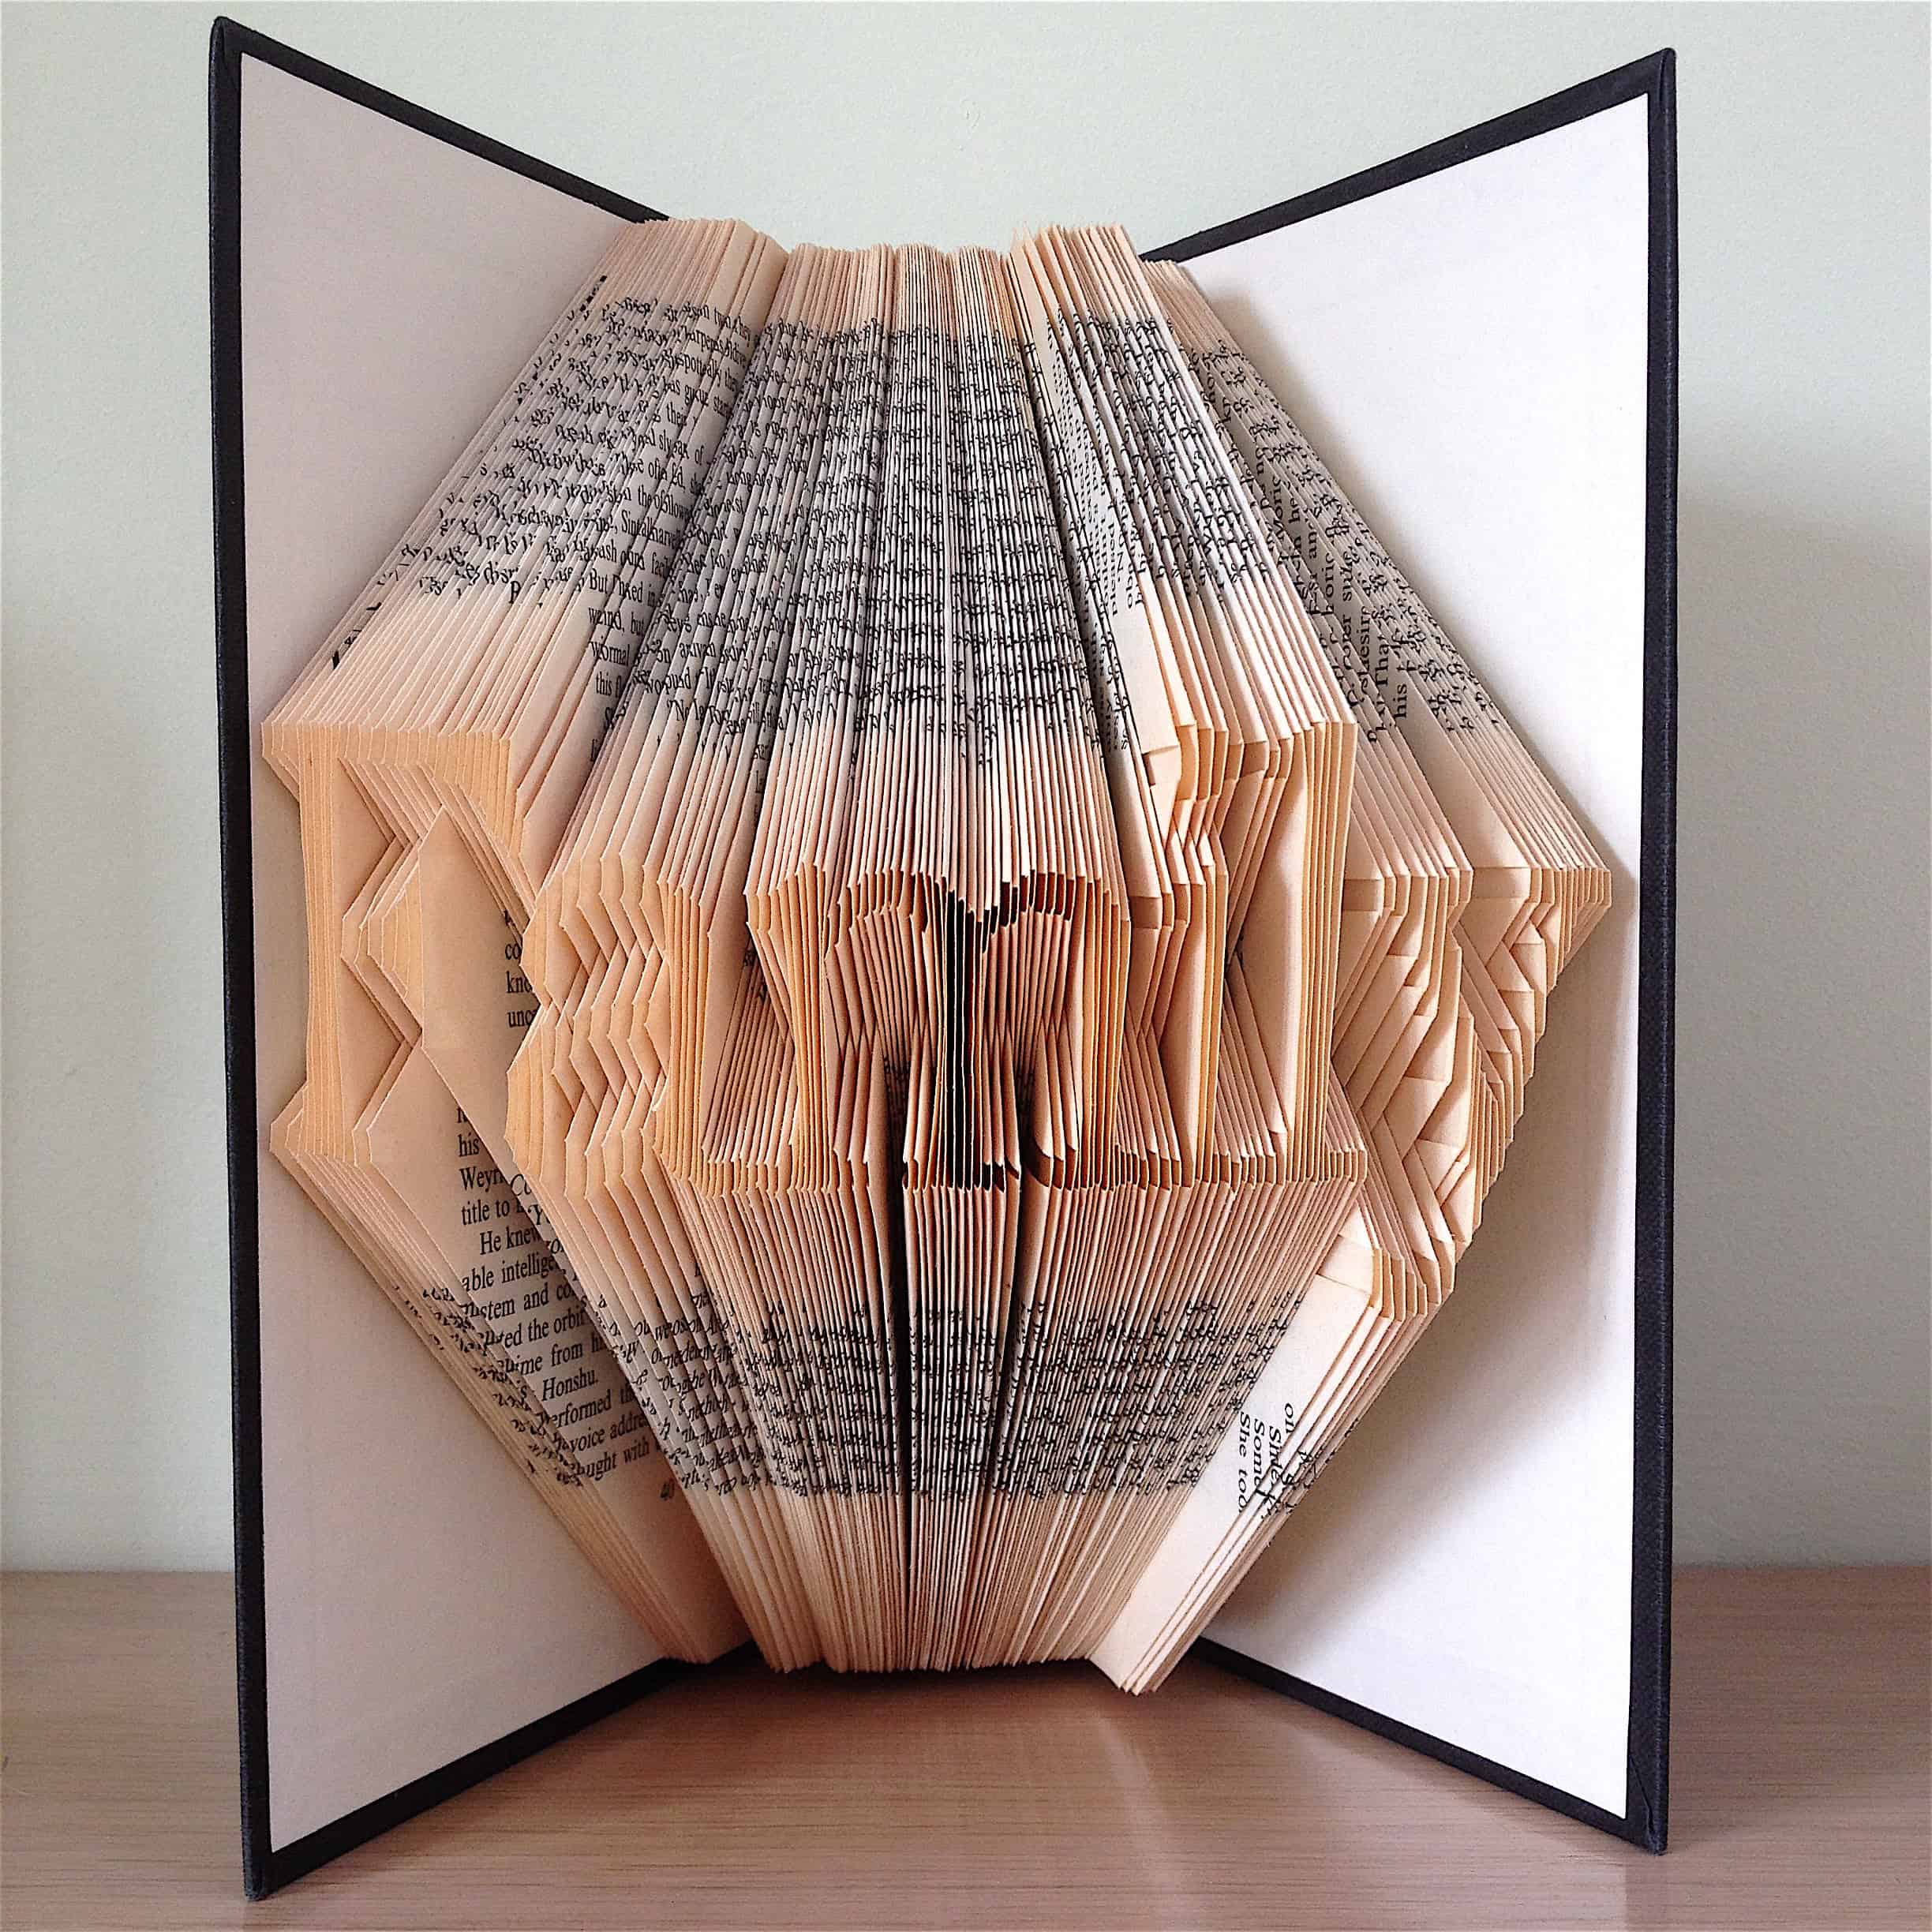 Handmade Folded Book Art Family. 